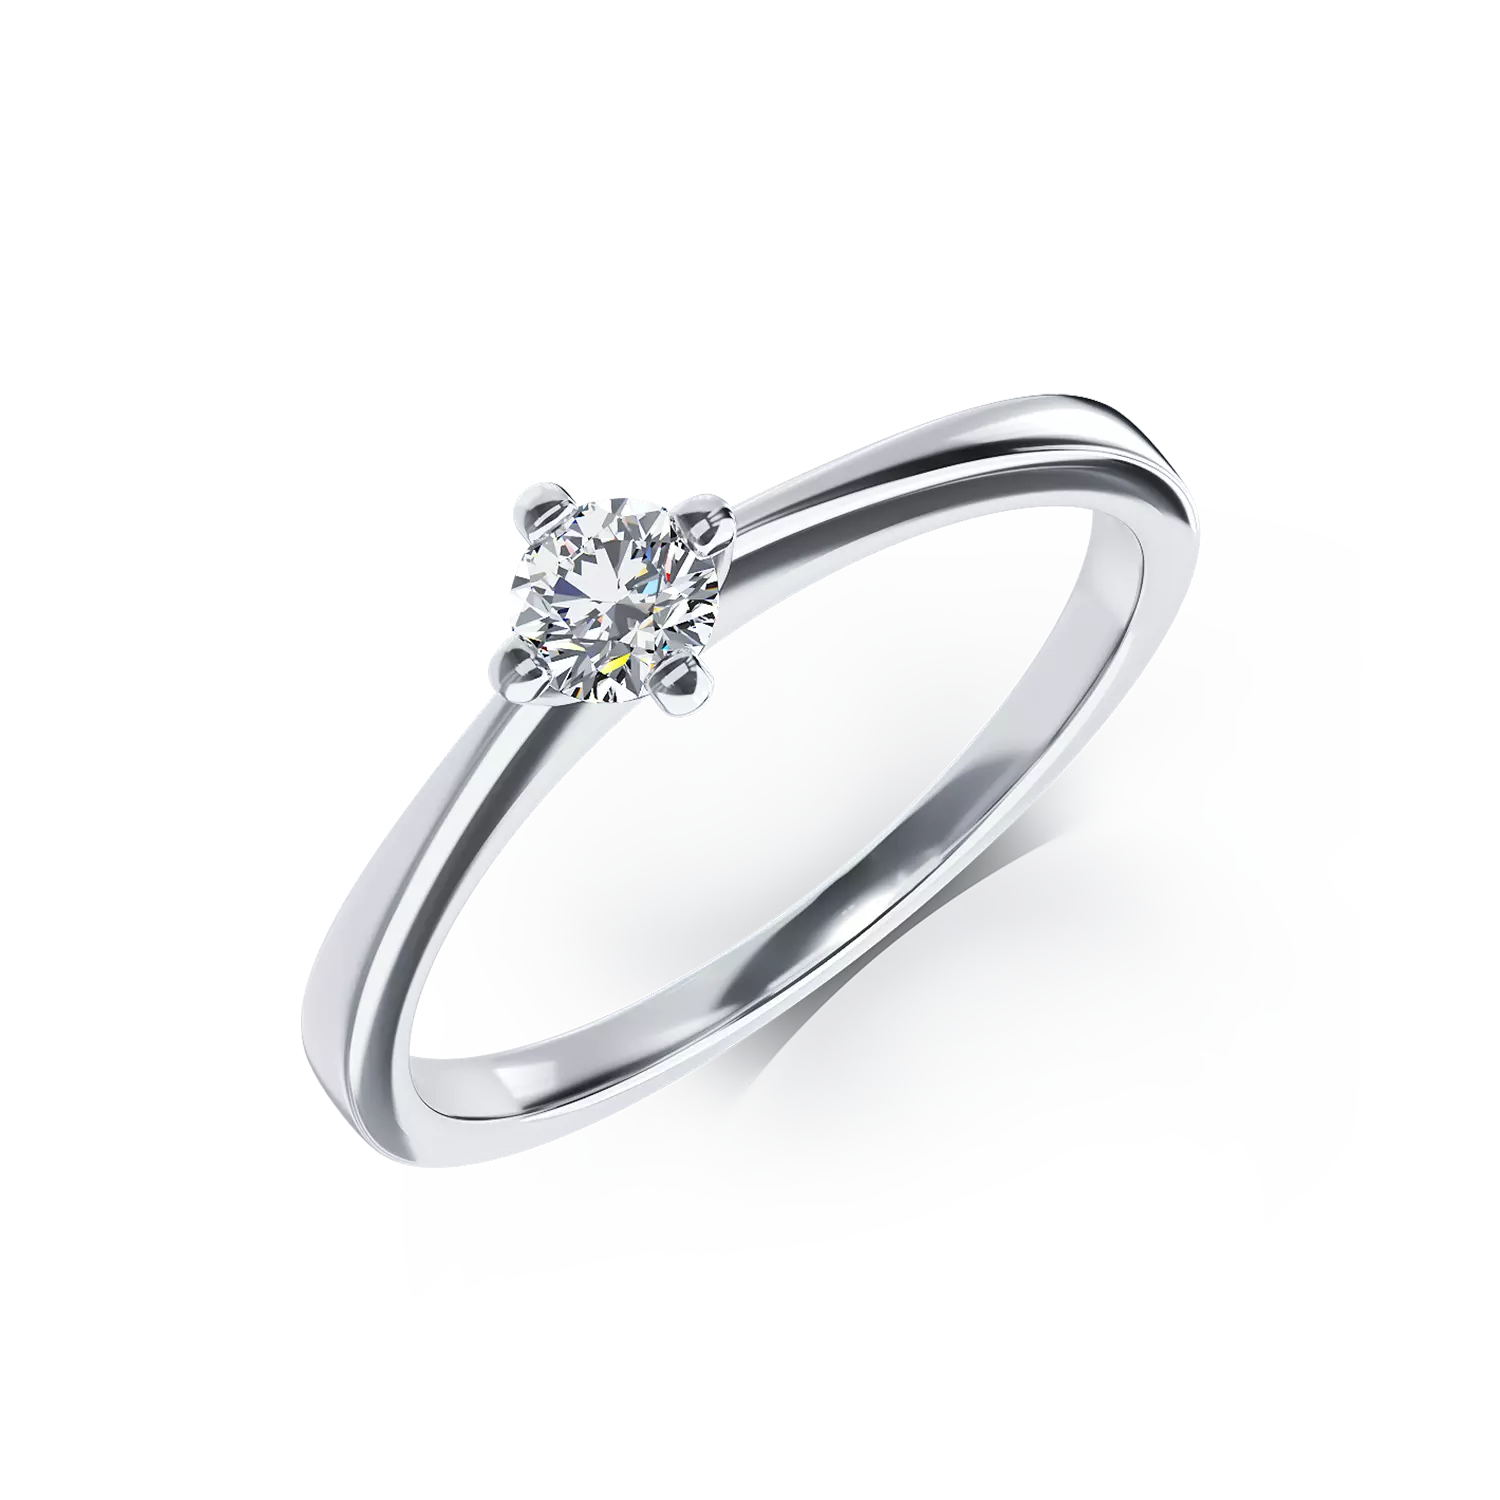 Inel de logodna din aur alb de 18K cu un diamant solitaire de 0.26ct